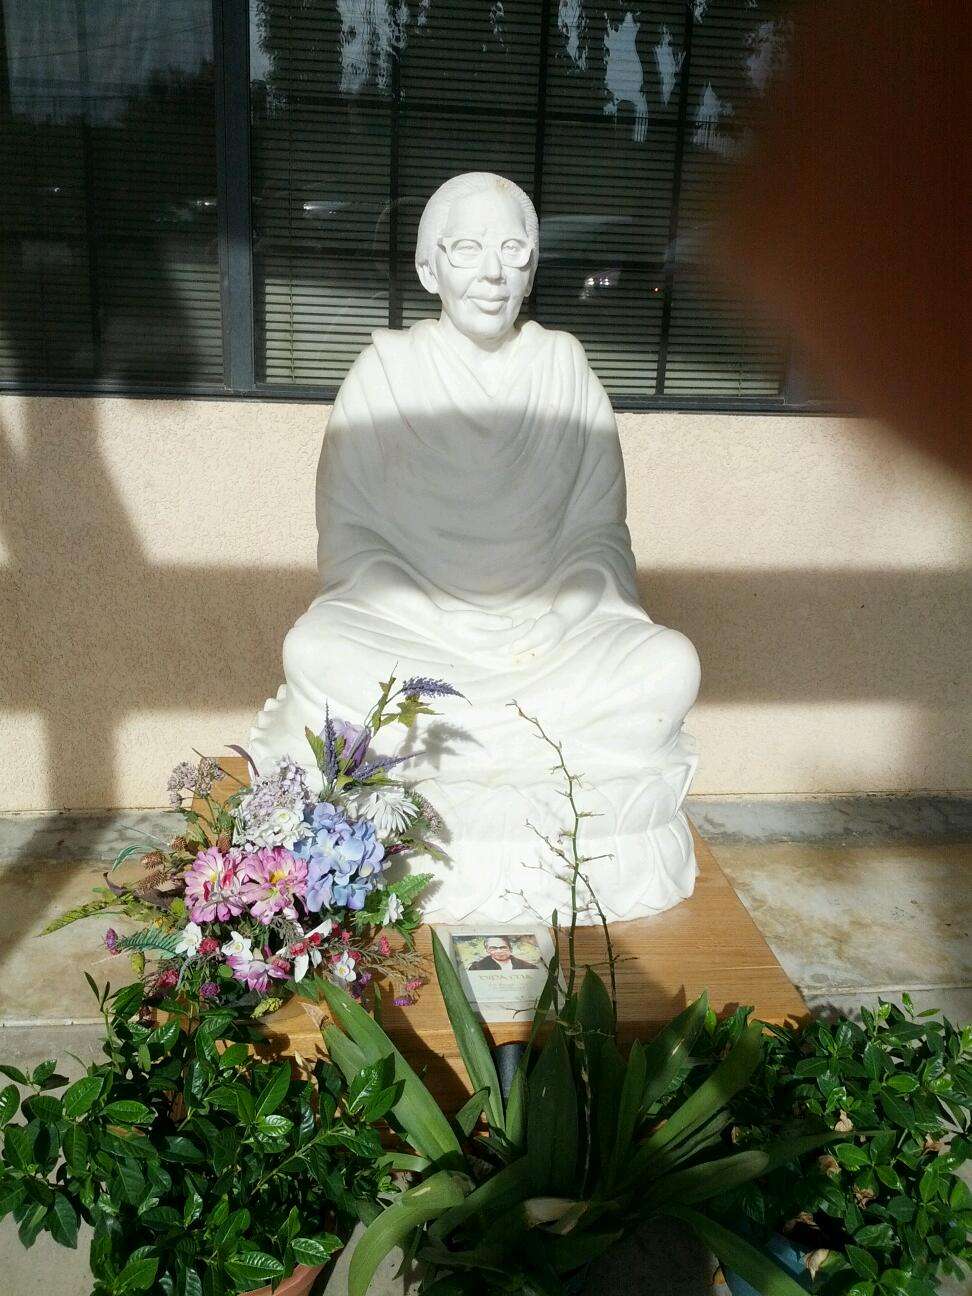 Sakyamuni Buddhist Meditation Center | 15950 Winters Ln, Riverside, CA 92504 | Phone: (951) 780-5249